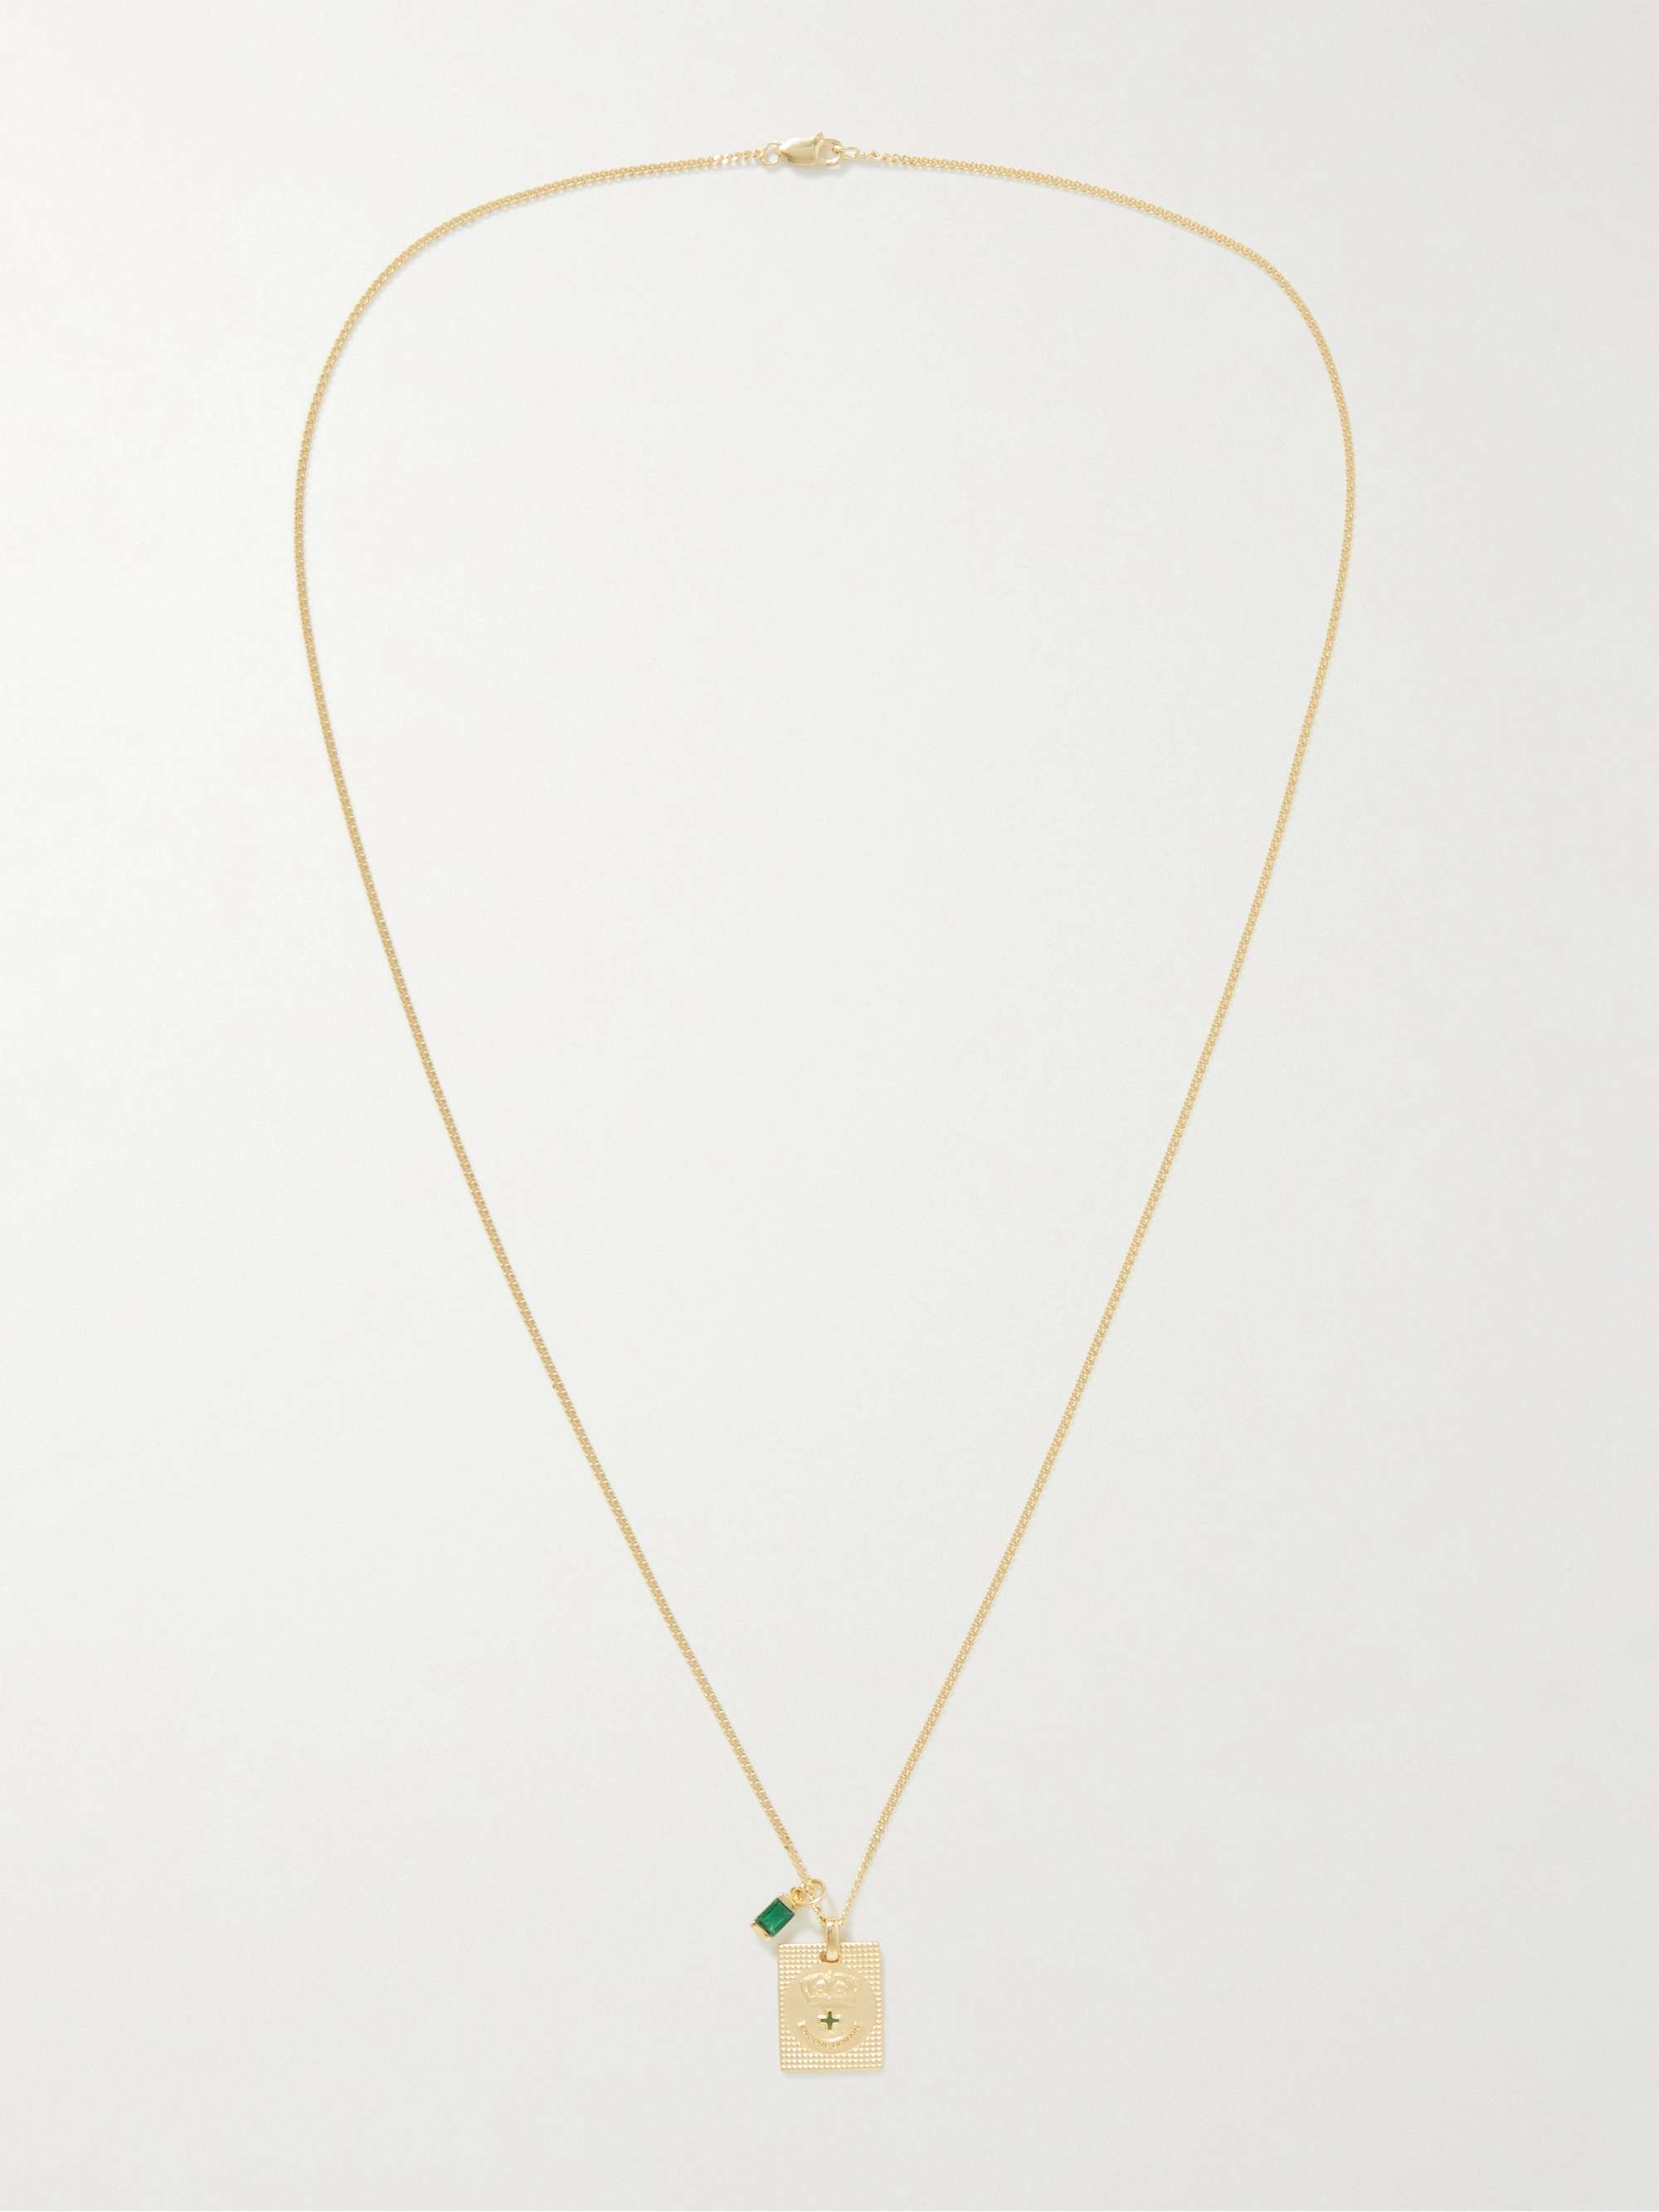 MIANSAI Lineage Gold Vermeil and Quartz Pendant Necklace